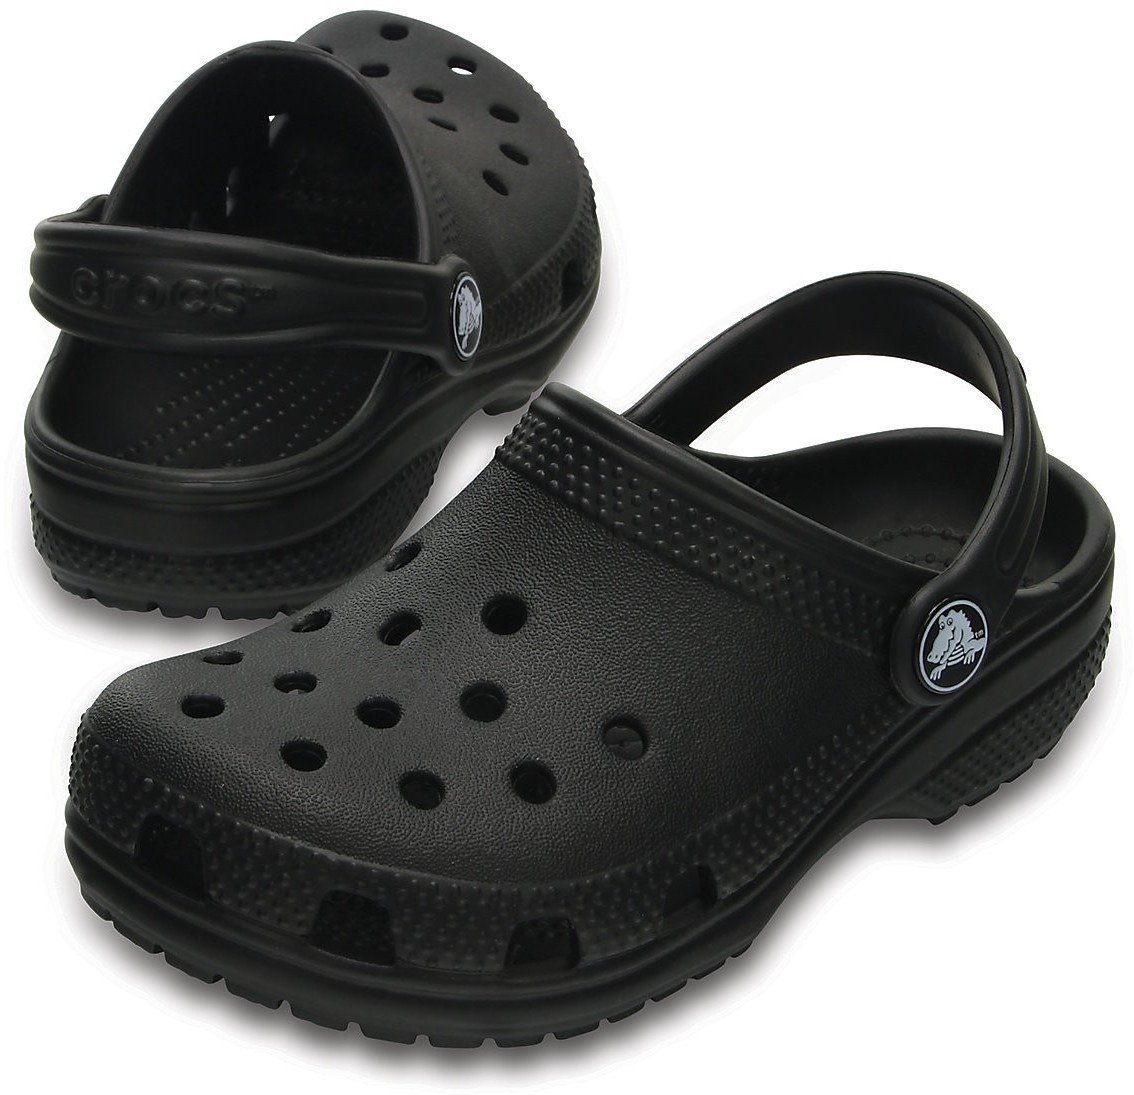 Buty żeglarskie dla dzieci Crocs Kids' Classic Clog Black 29-30